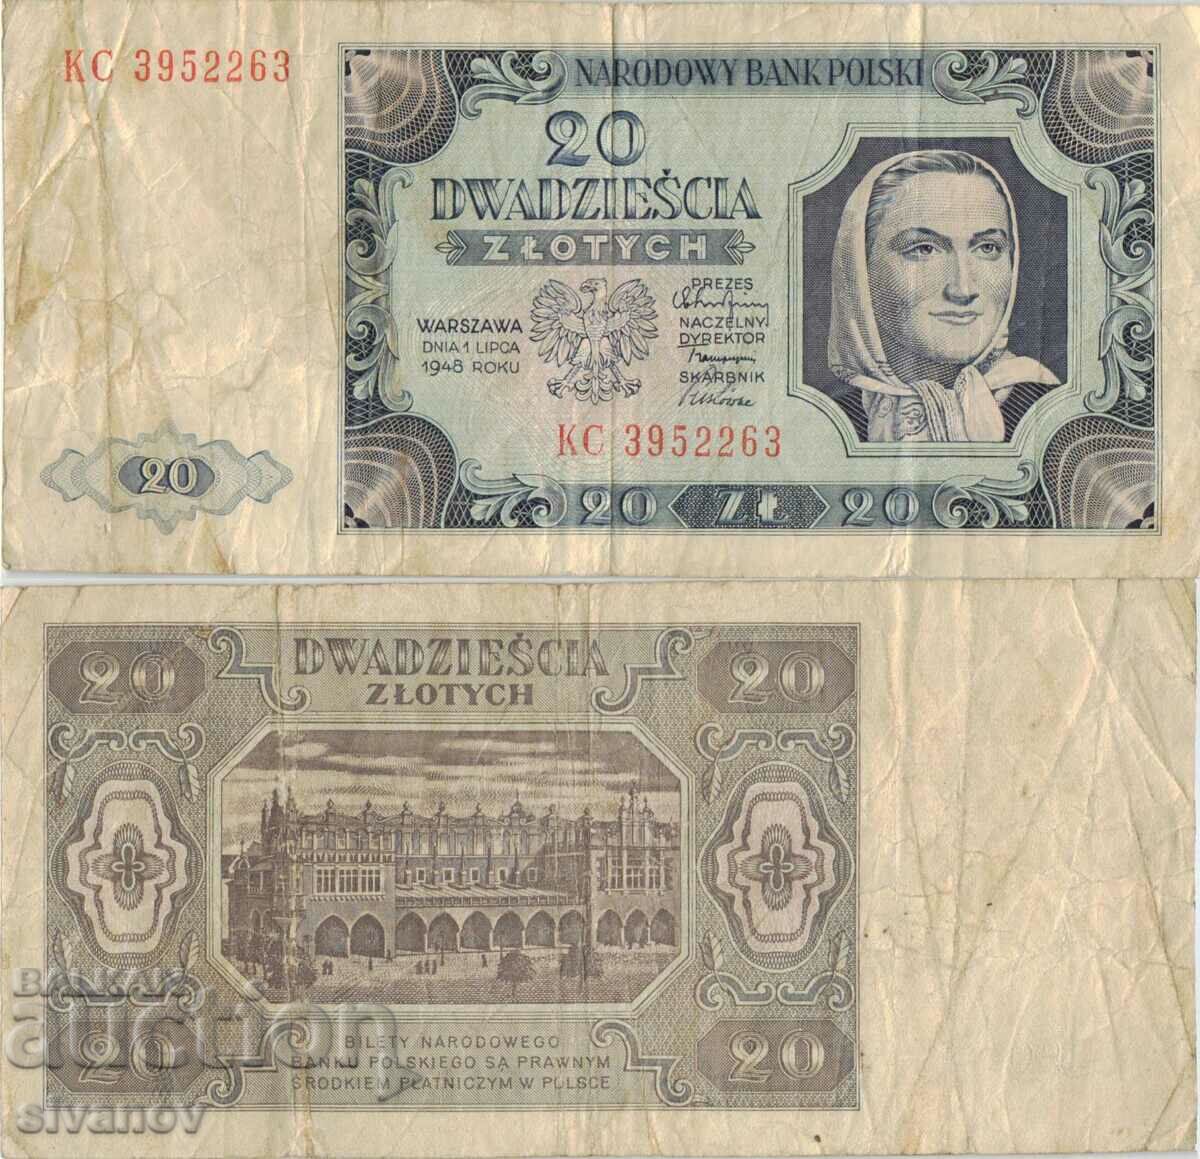 Poland 20 zloty 1948 banknote #5295